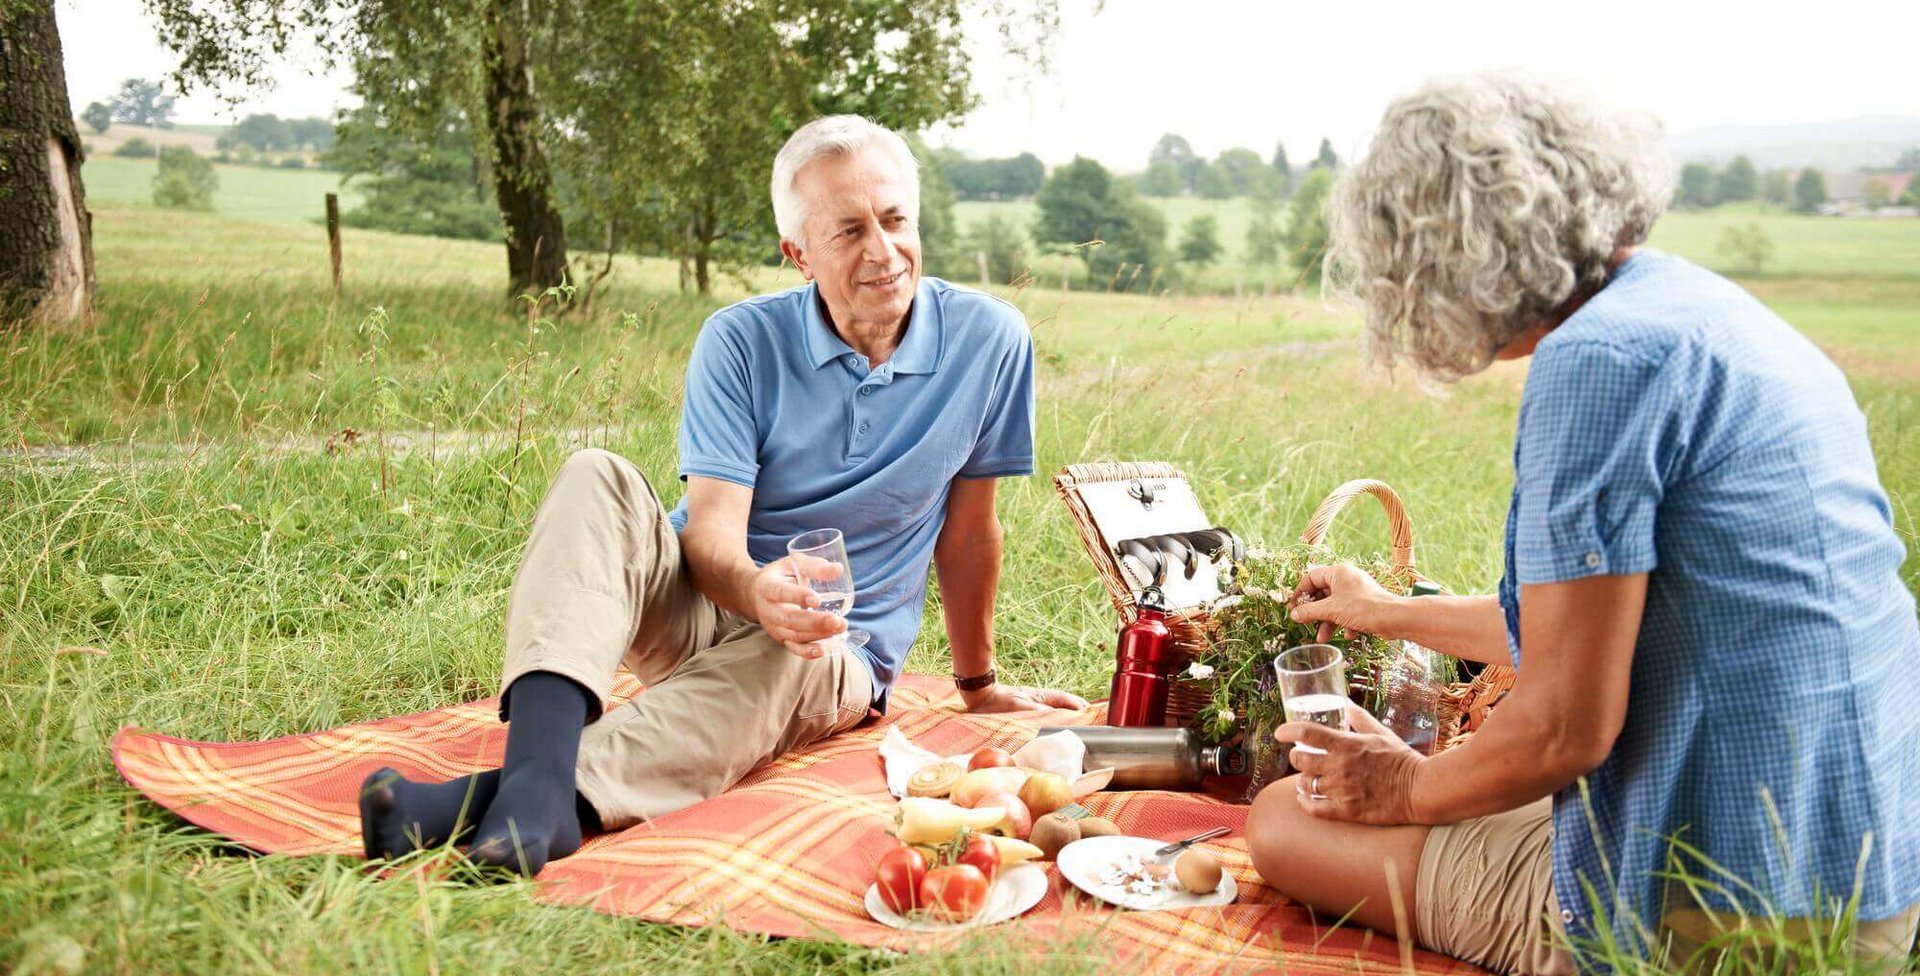 Ein älteres Ehepaar sitzt auf einer Picknickdecke auf einer Feldwiese. Auf der Decke sind ebenfalls Lebensmittel, Getränke und ein Picknickkorb.